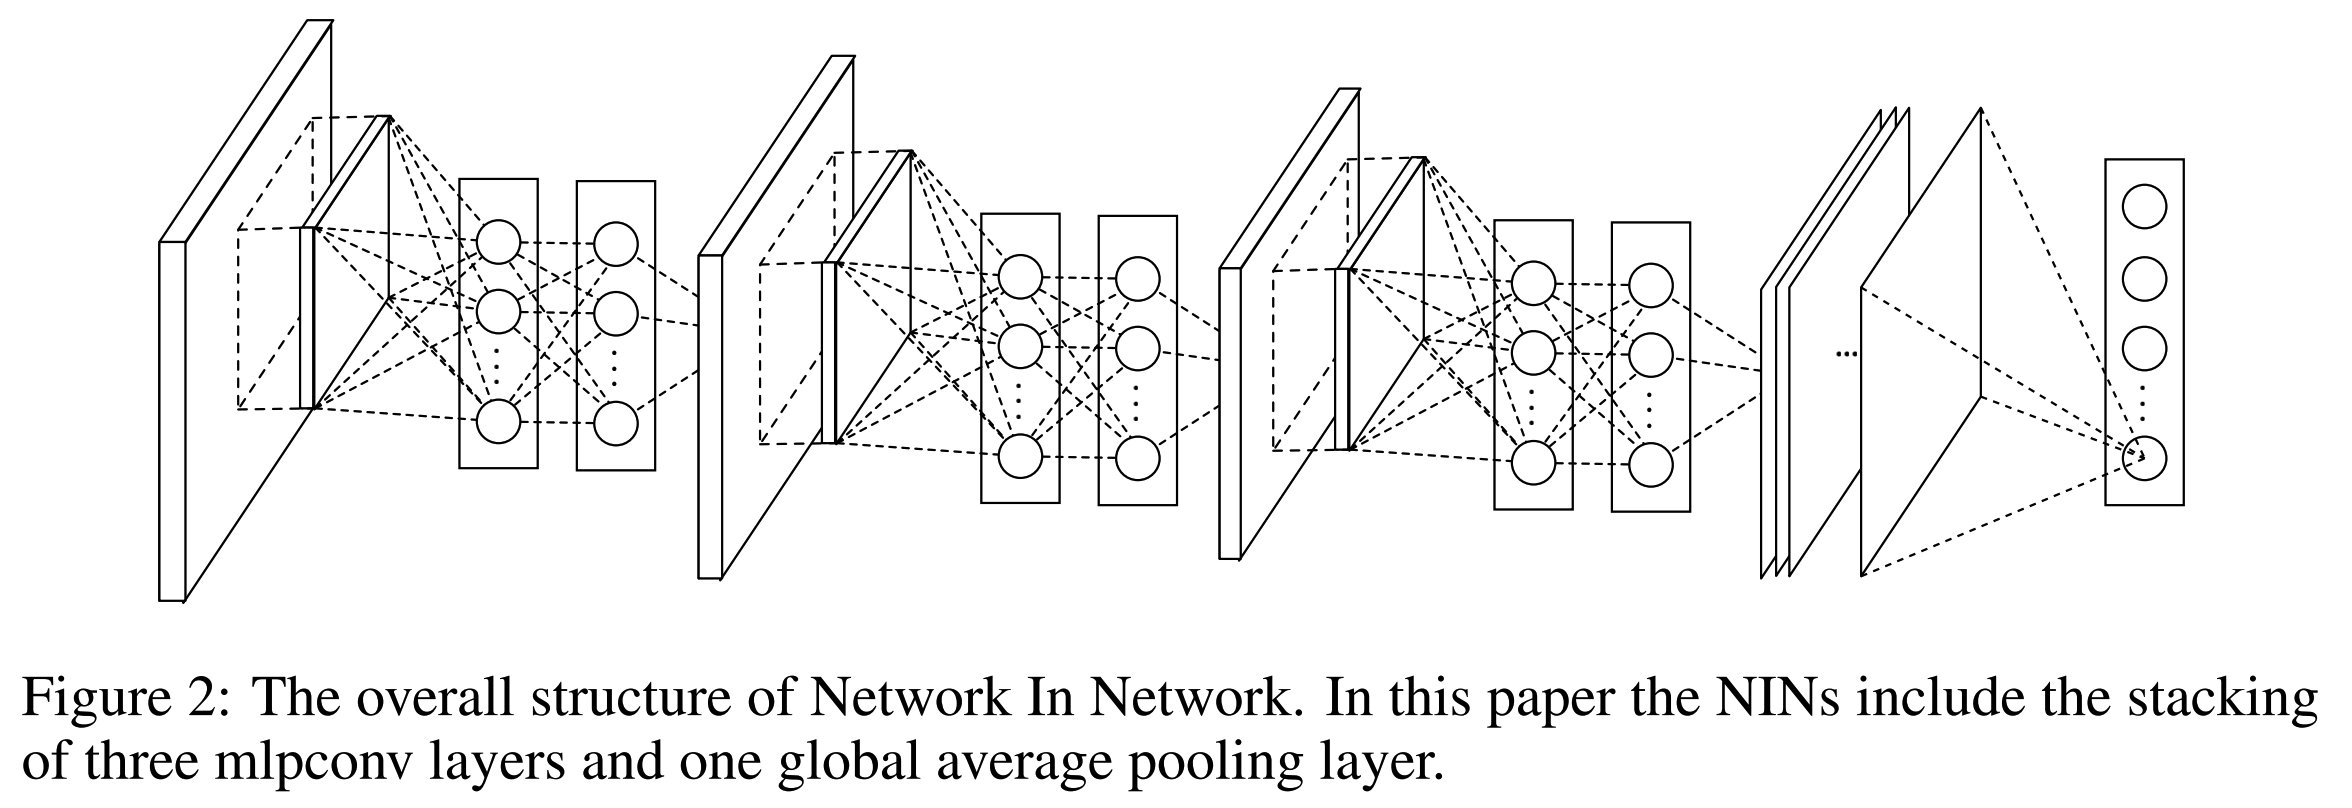 【论文精读】Network In Network（1*1 卷积层代替FC层 global average pooling）